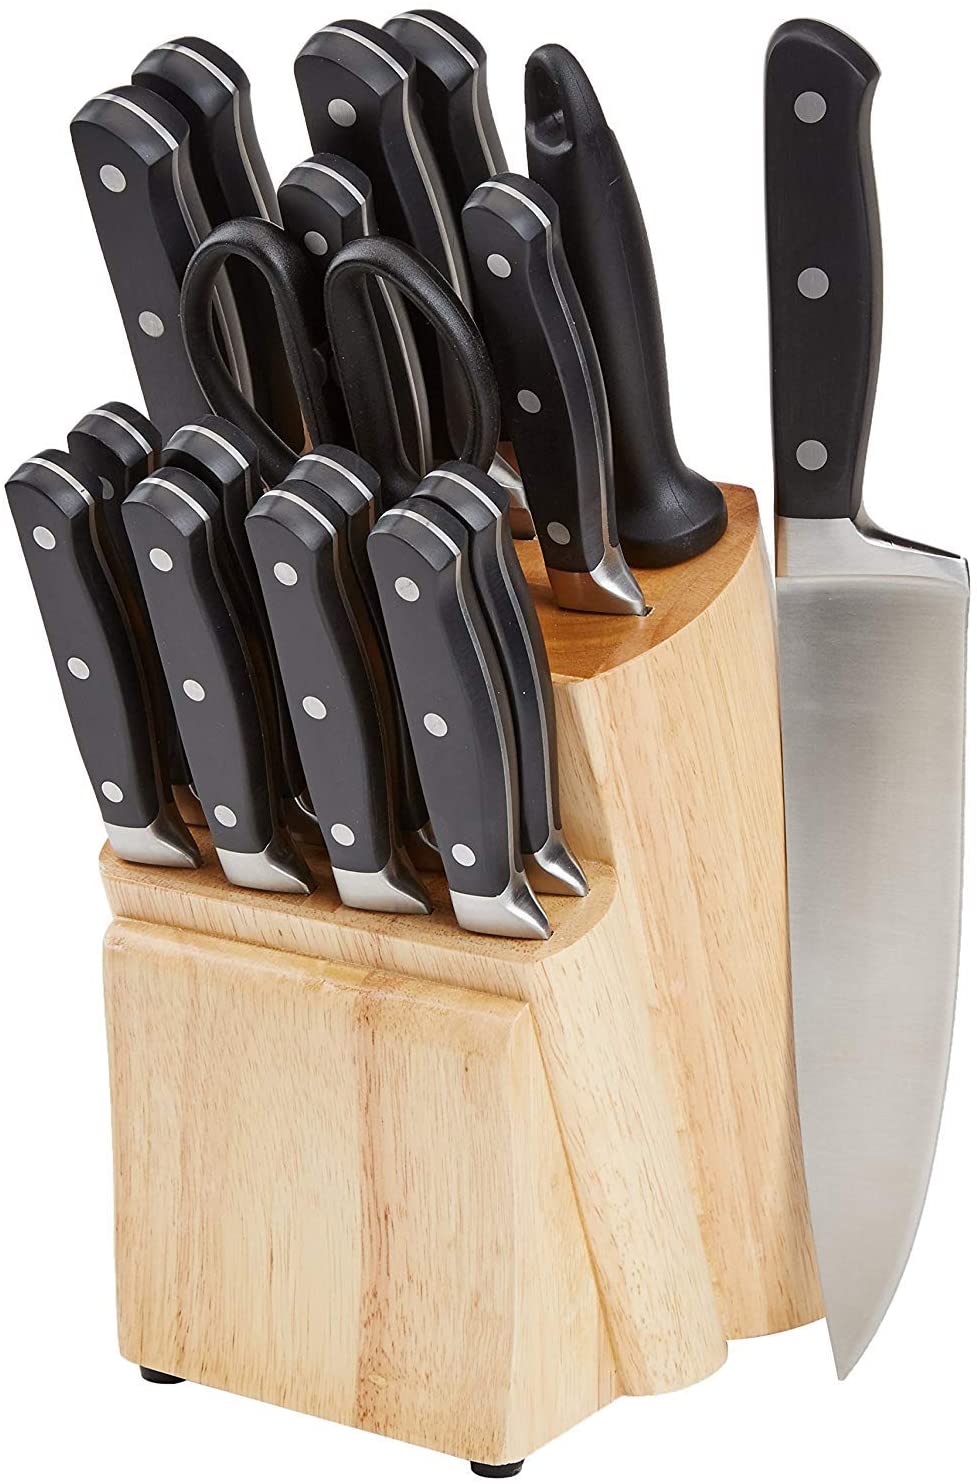 Best Kitchen Knife Set Under 100